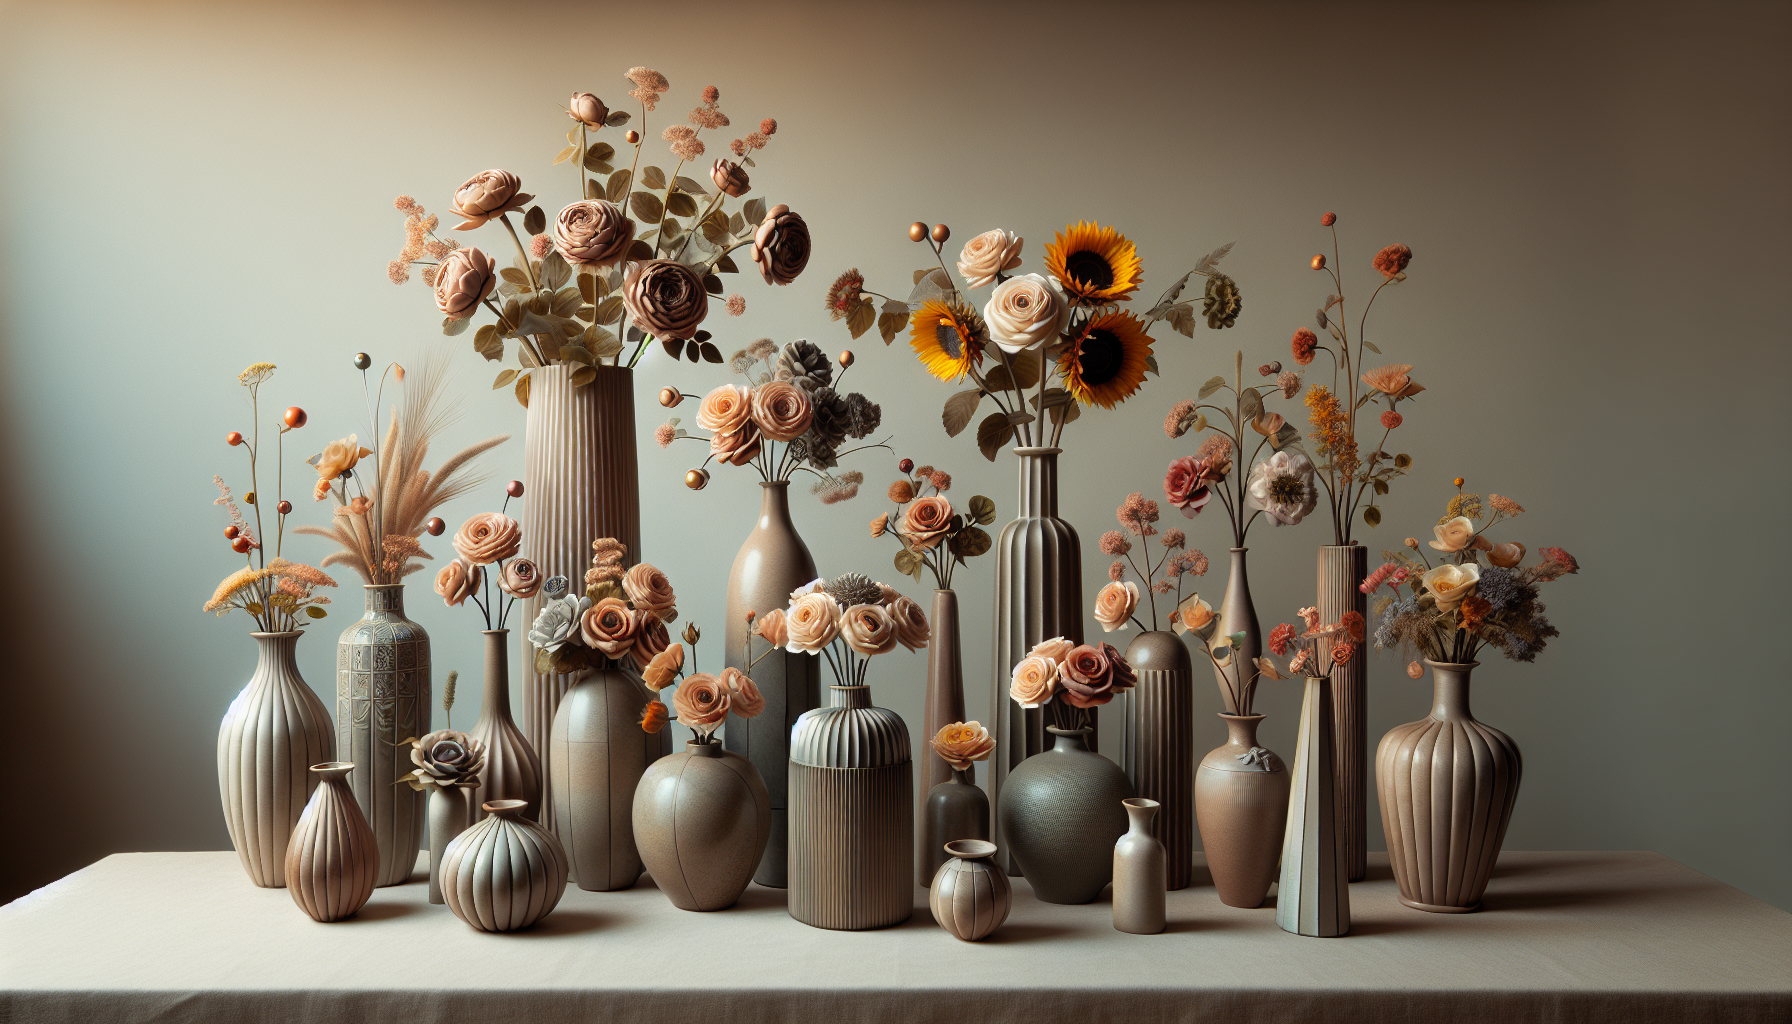 Different vase shapes for flower arrangements